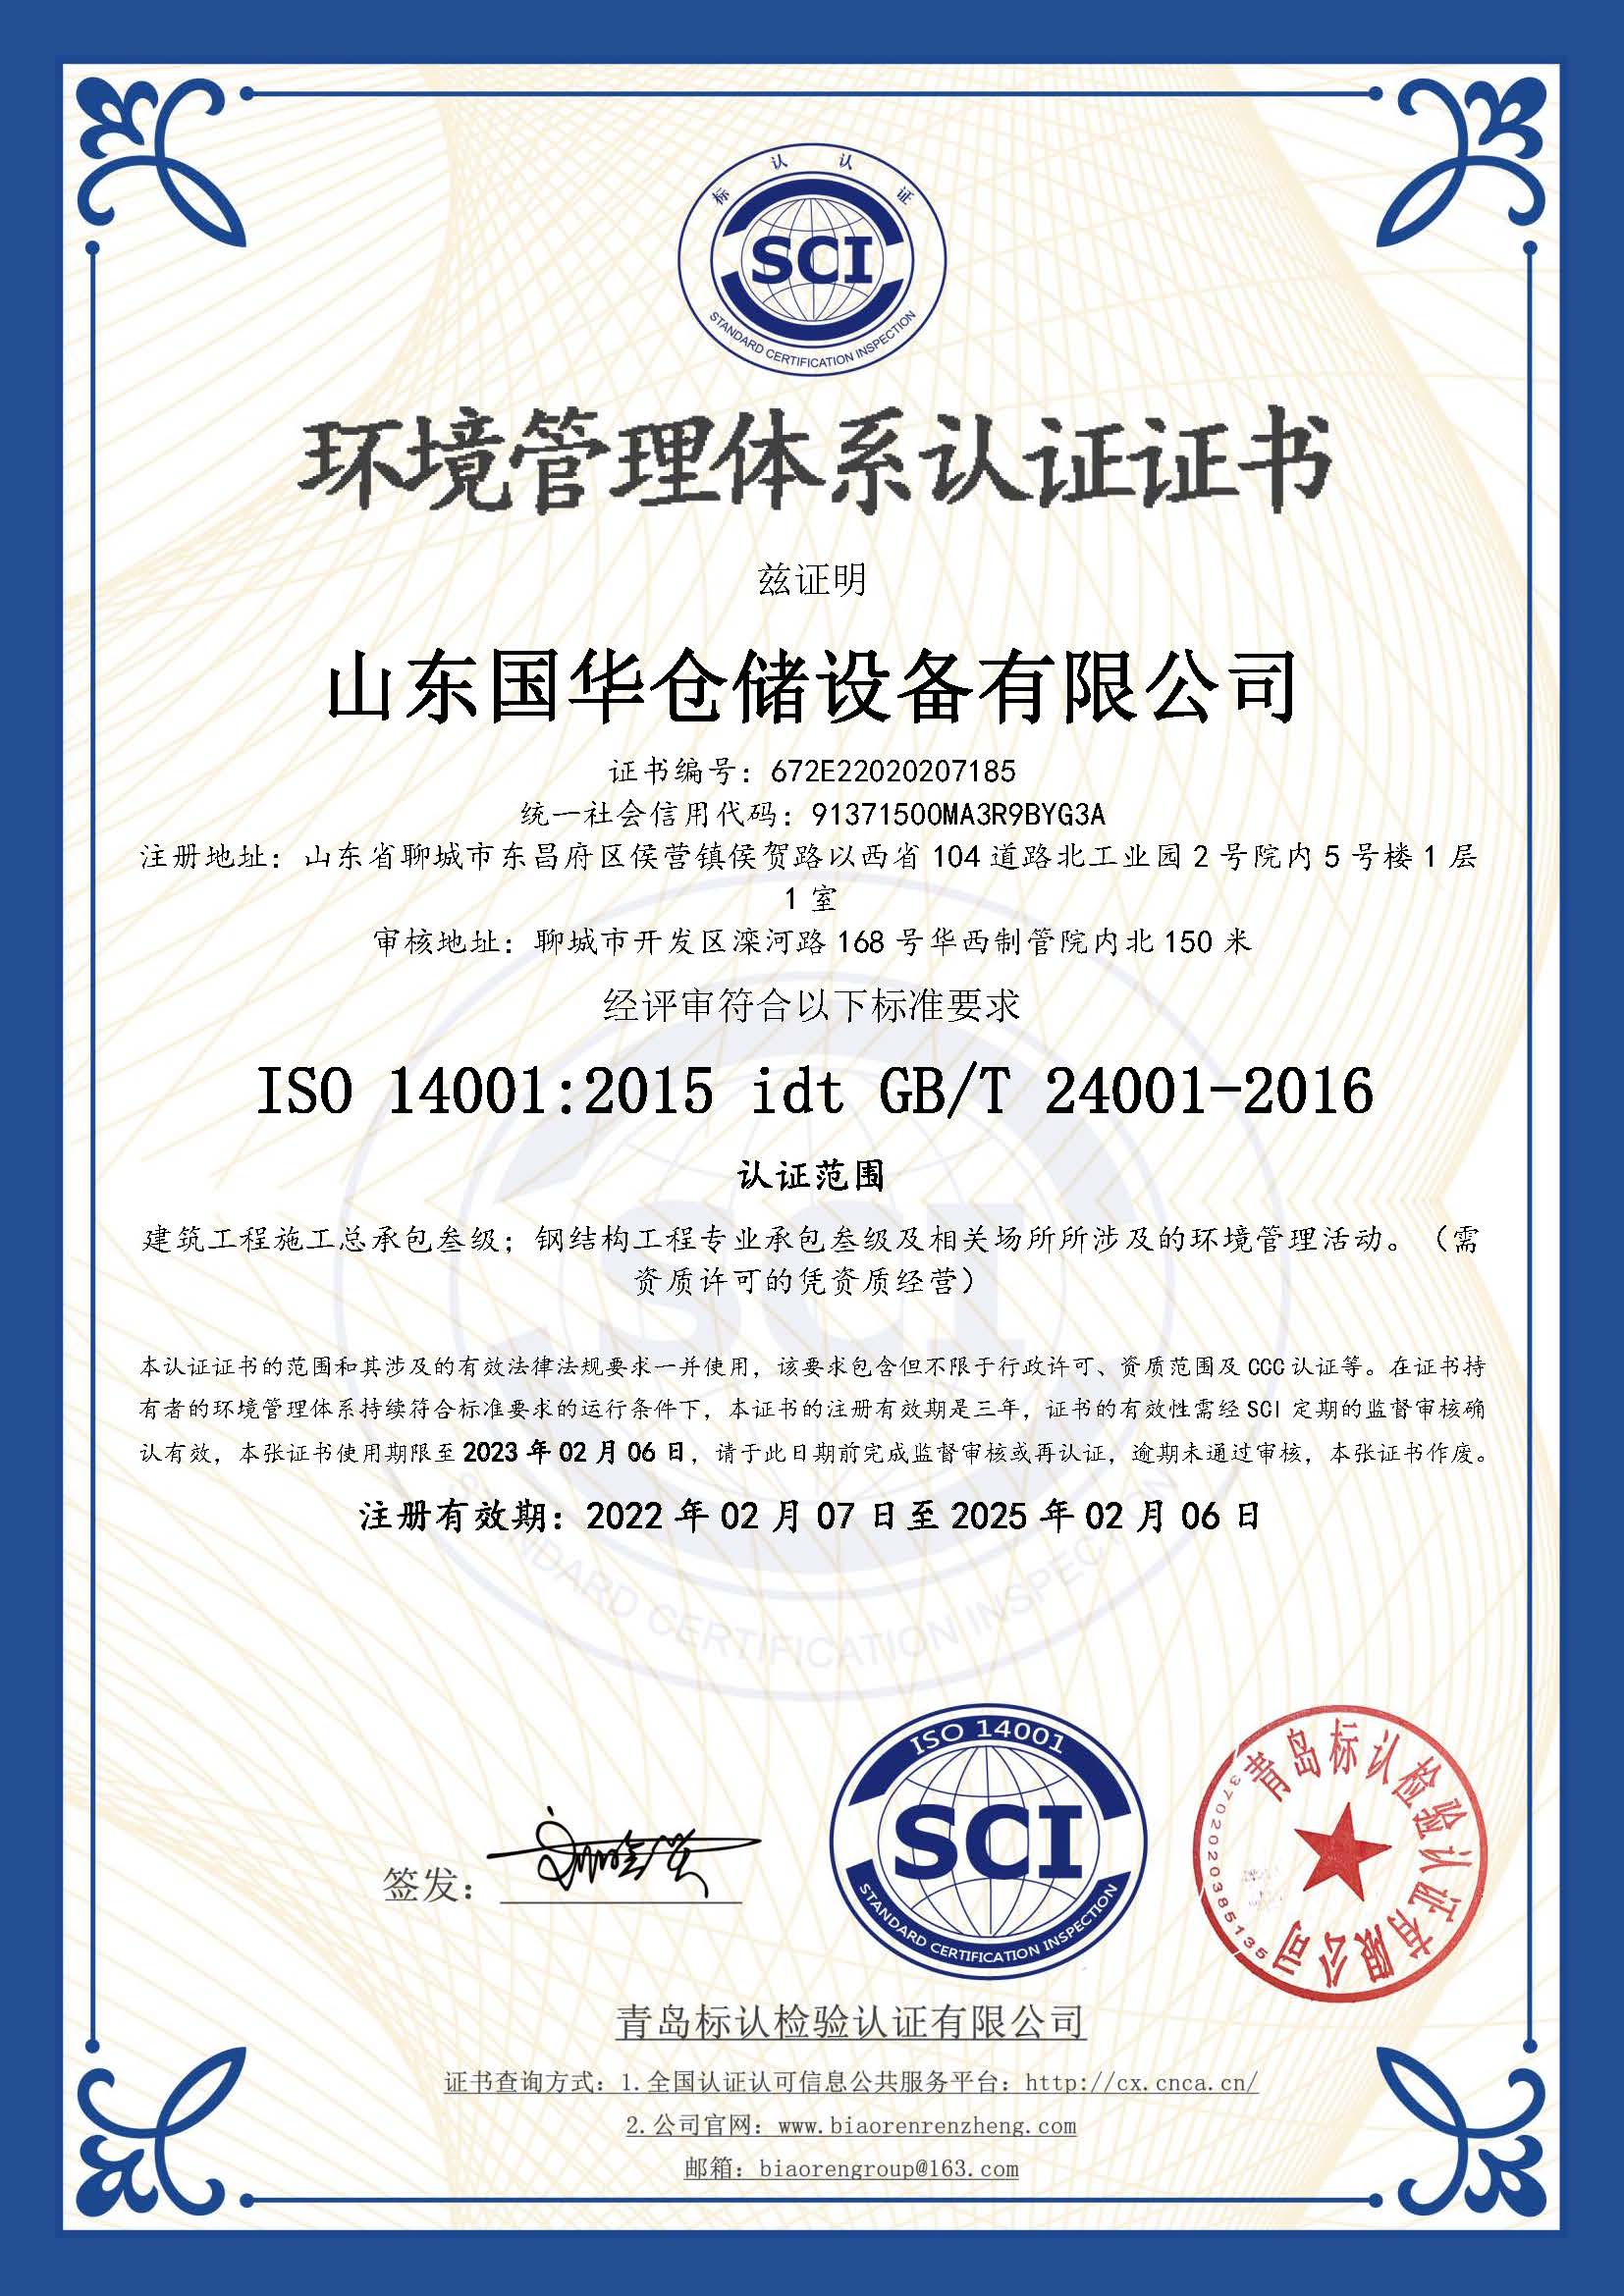 大连钢板仓环境管理体系认证证书